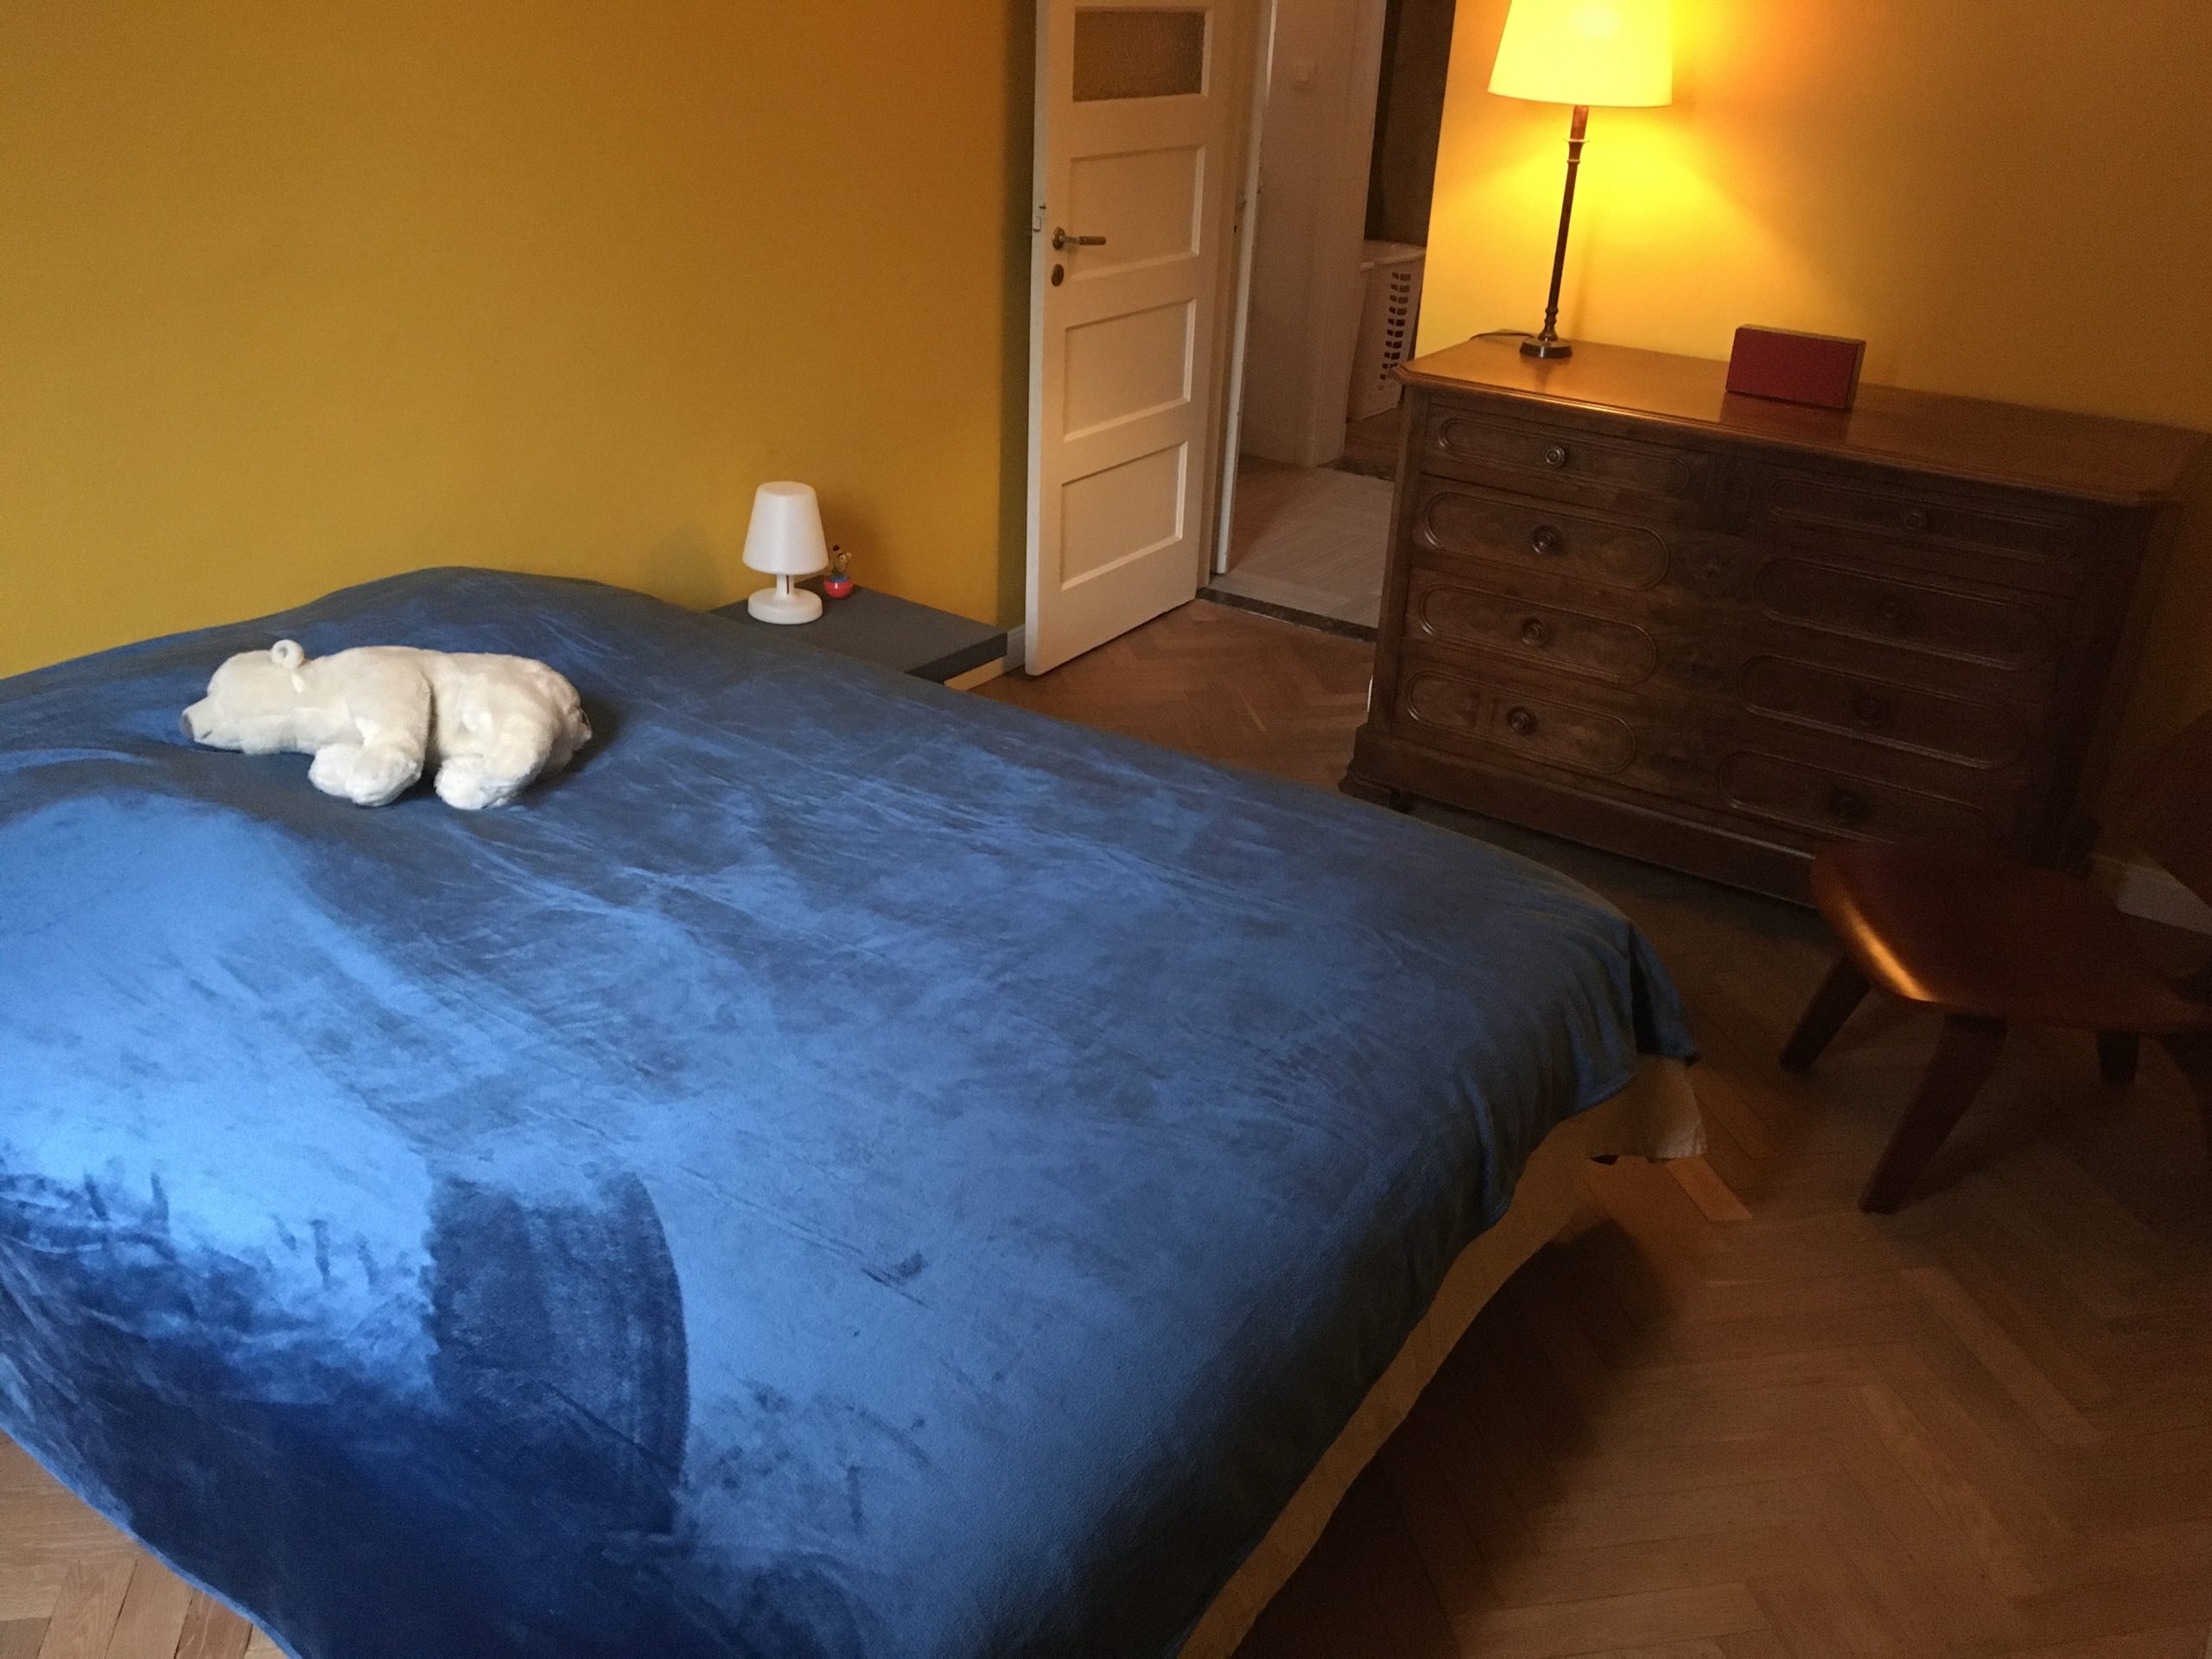 apartment for rent in Antwerp - bedroom